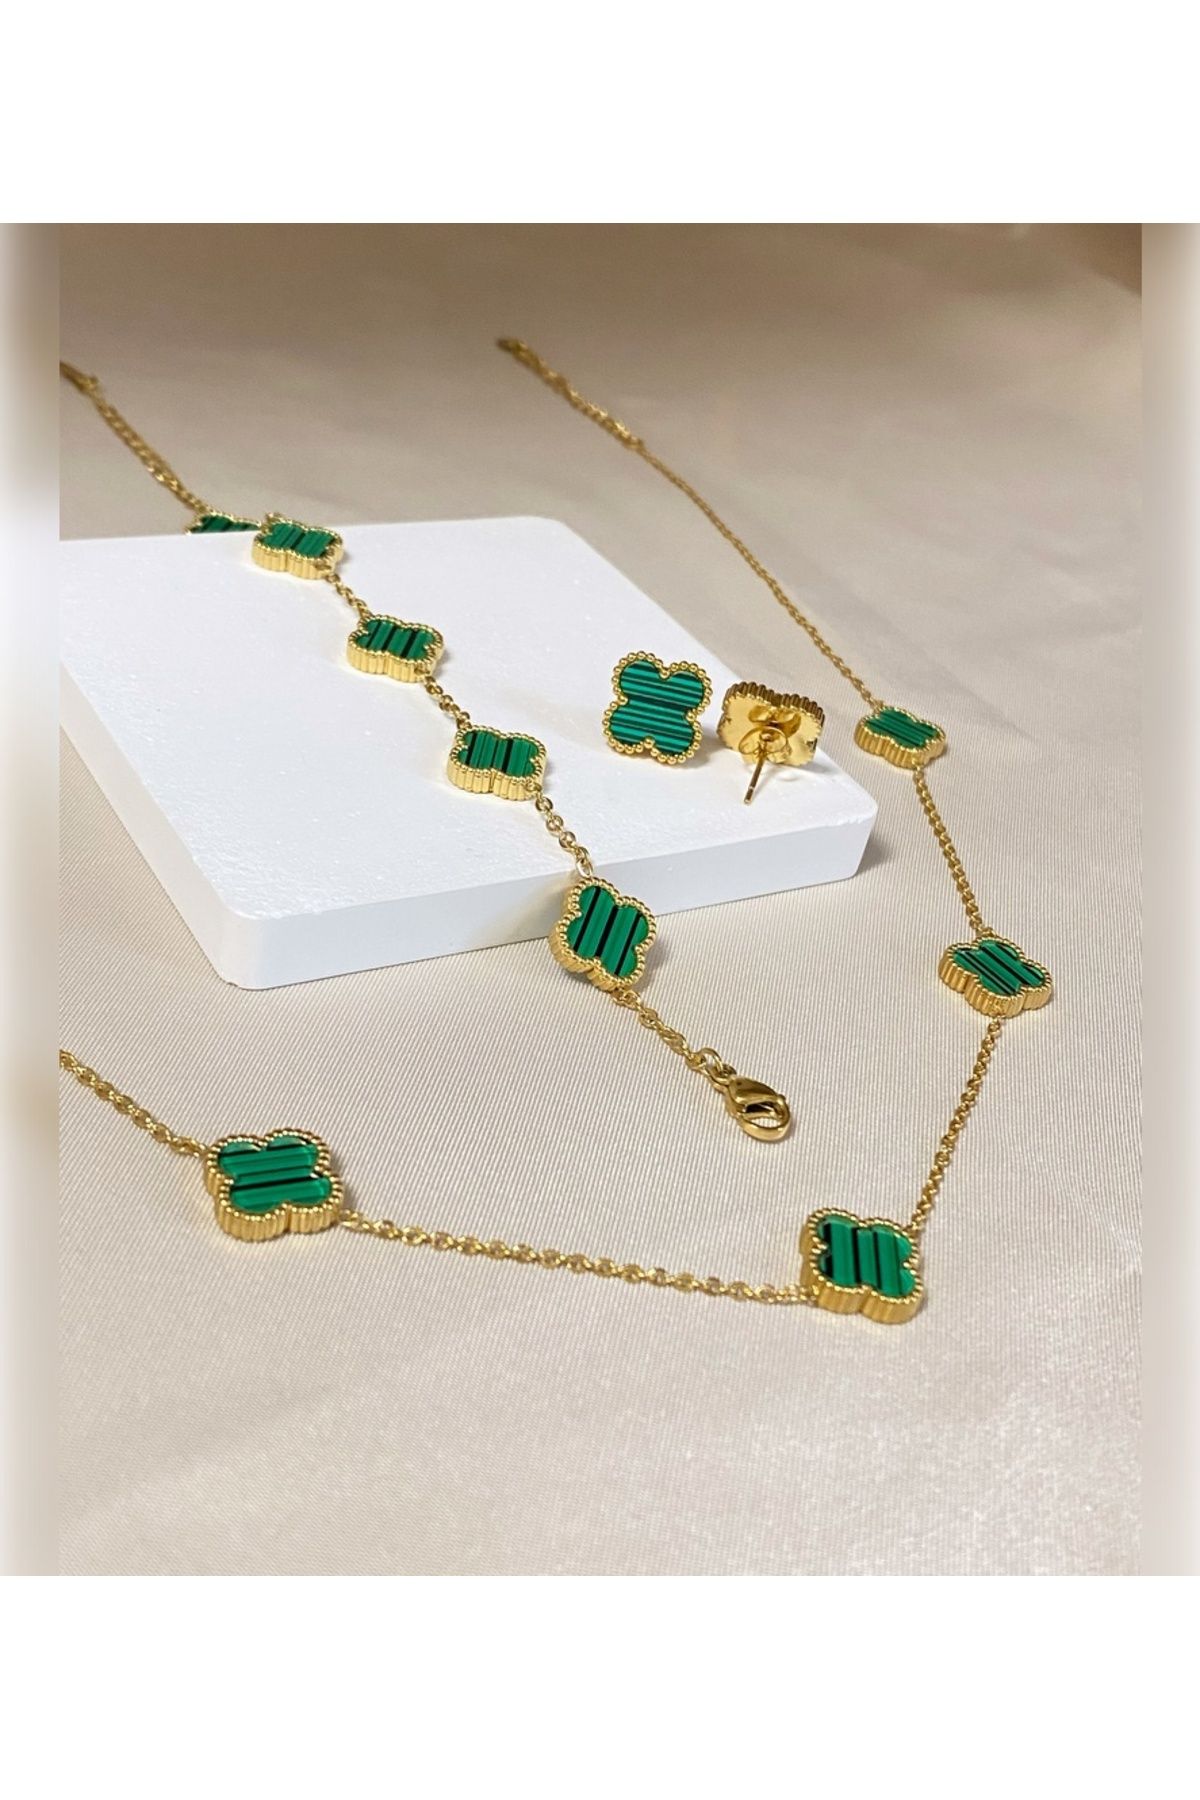 Inure Jewelry Glare Van Cleef Yeşil Yonca Model Kadın Çelik (KOLYE & BİLEKLİK & KÜPE) 3'lü Set